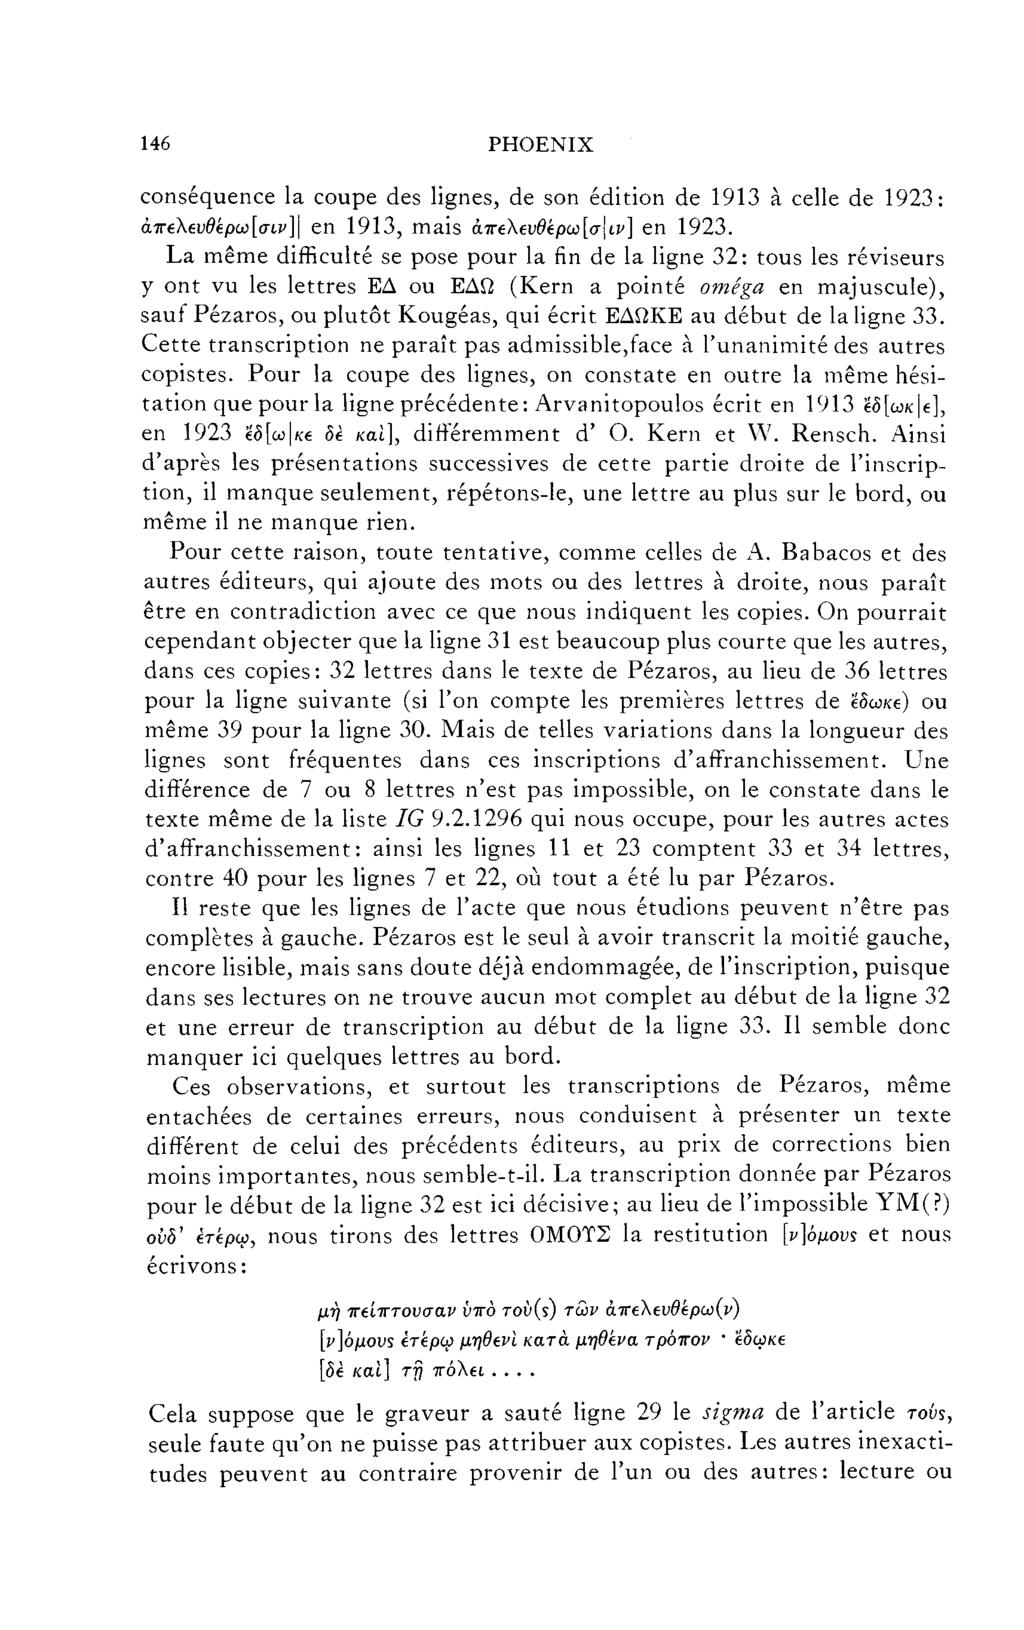 146 PHOENIX conséquence la coupe des lignes, de son édition de 1913 à celle de 1923: άπβ\6υθβρω[σίν]\ en 1913, mais άπβλβυθ ρω[σ\ι,ν] en 1923.